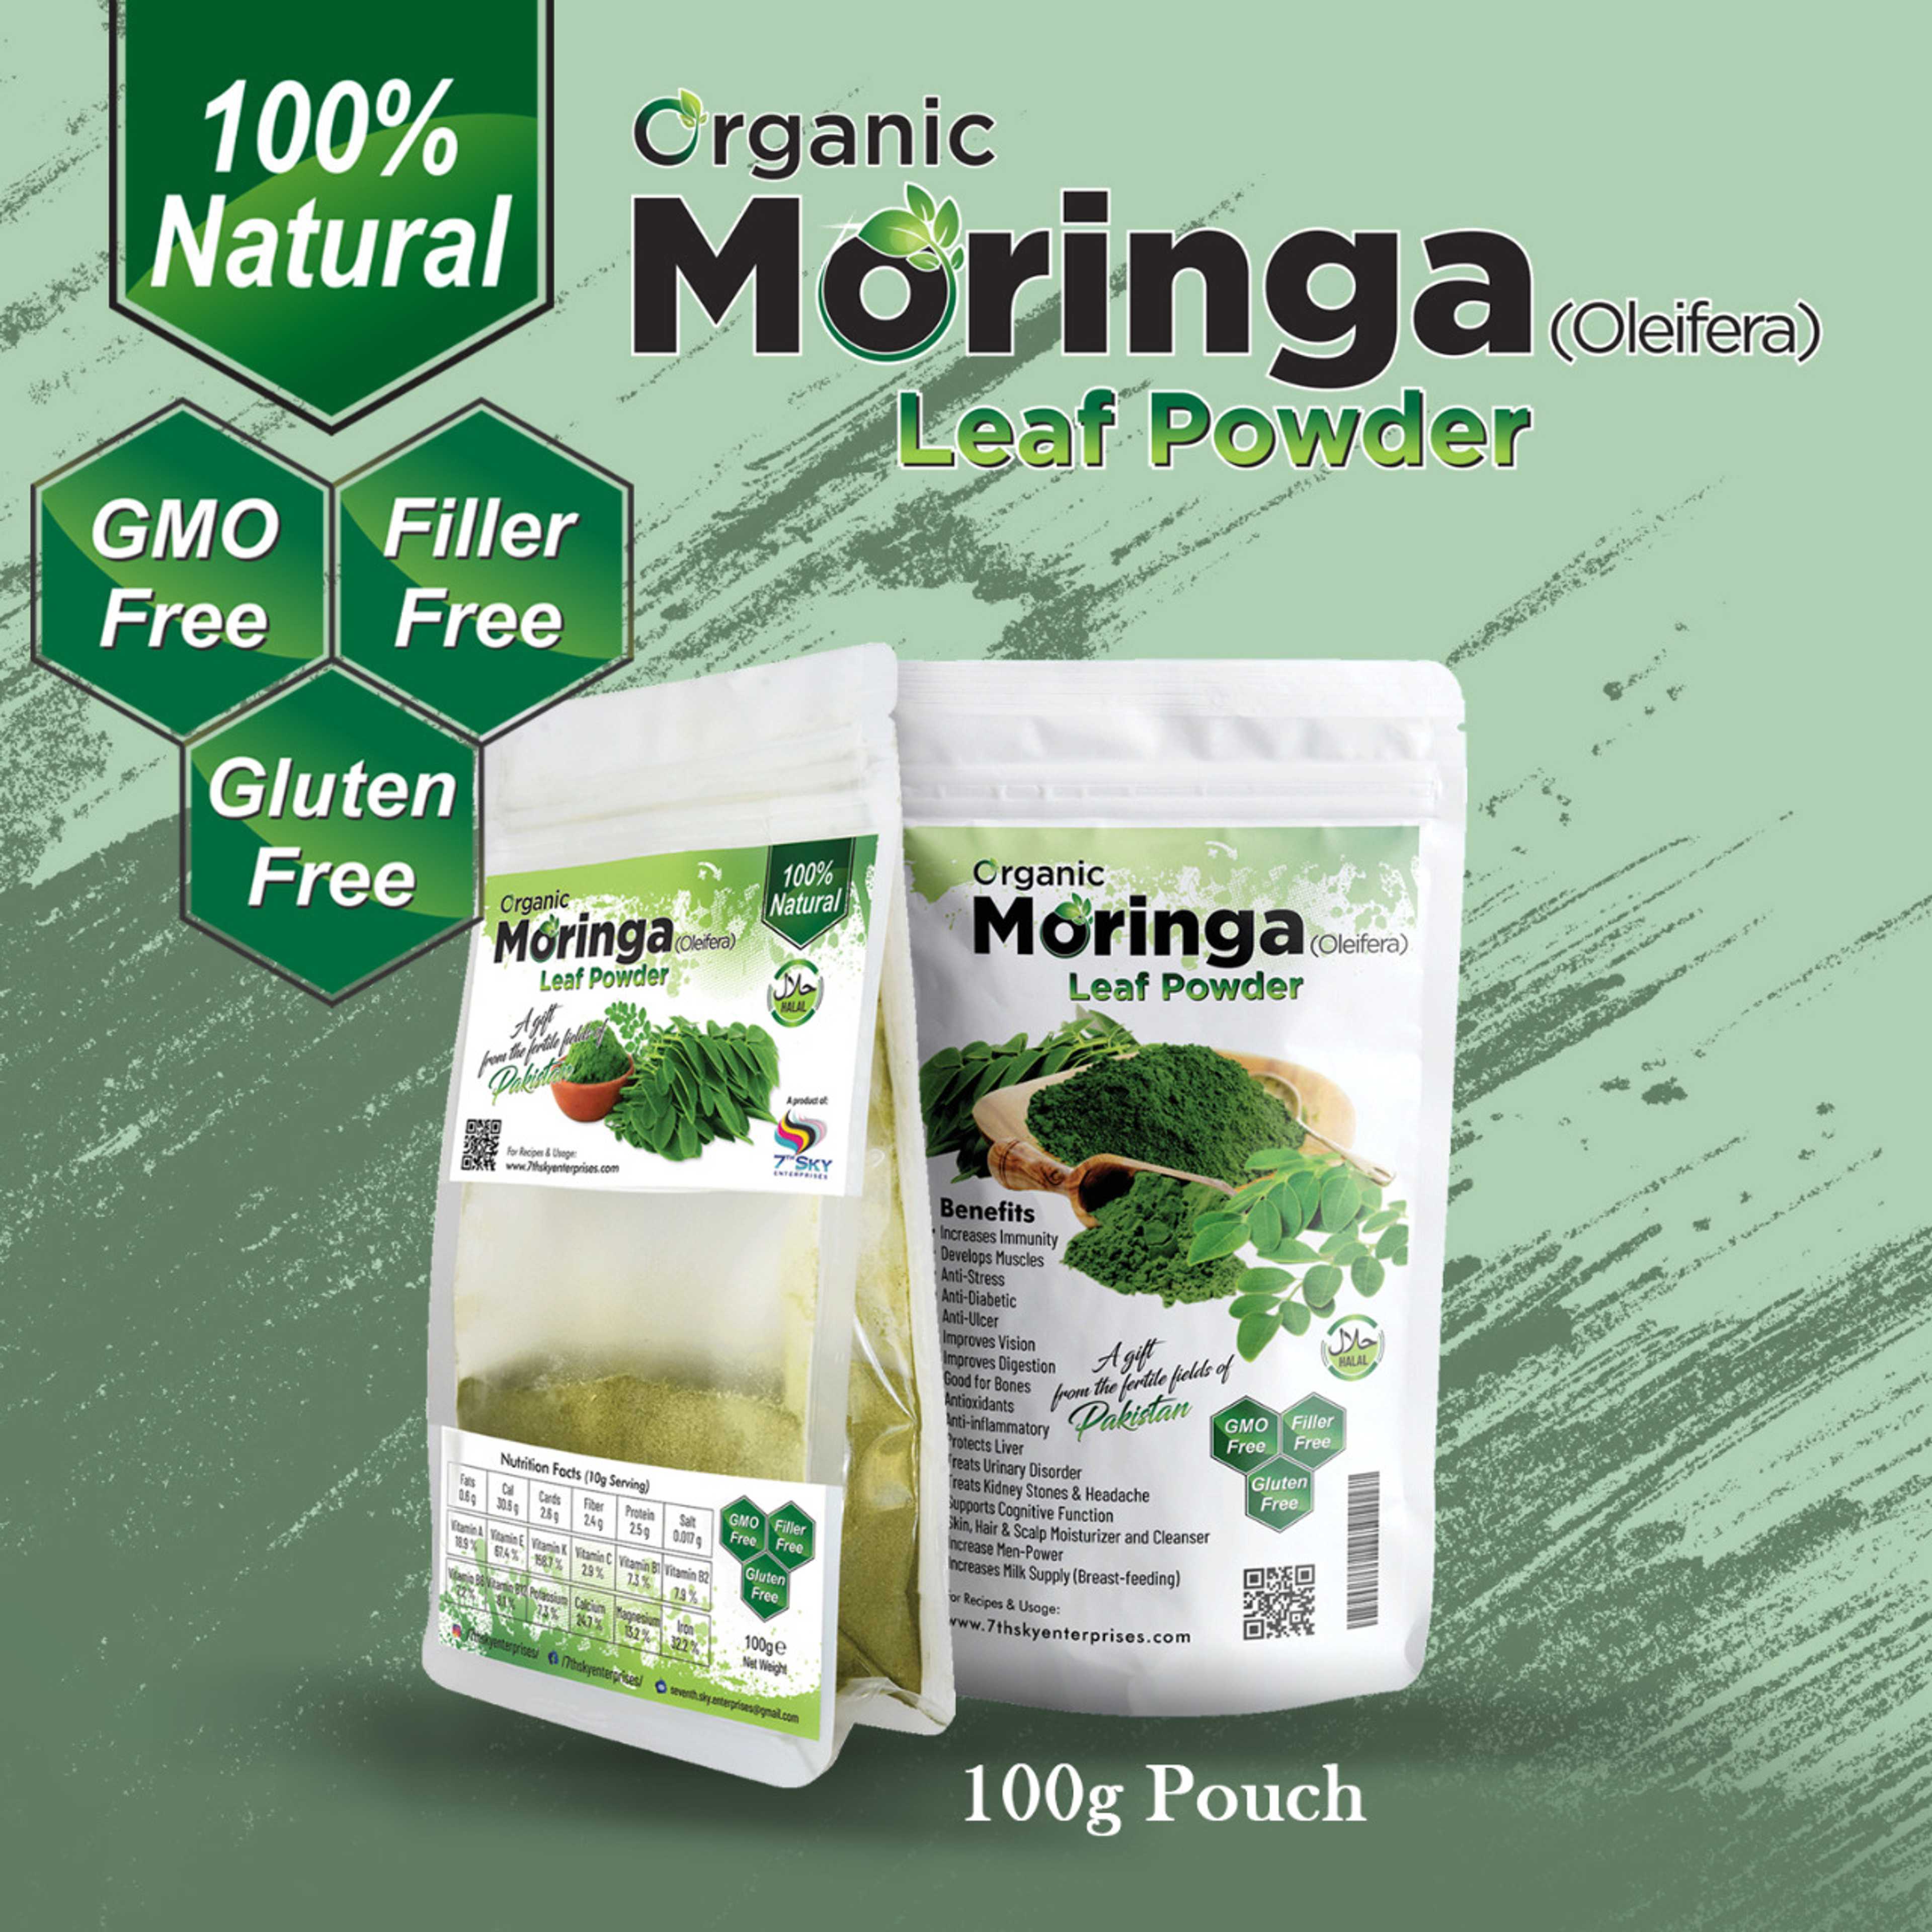 Organic Moringa (Oleifera) Leaf Powder 100g (Pouch)